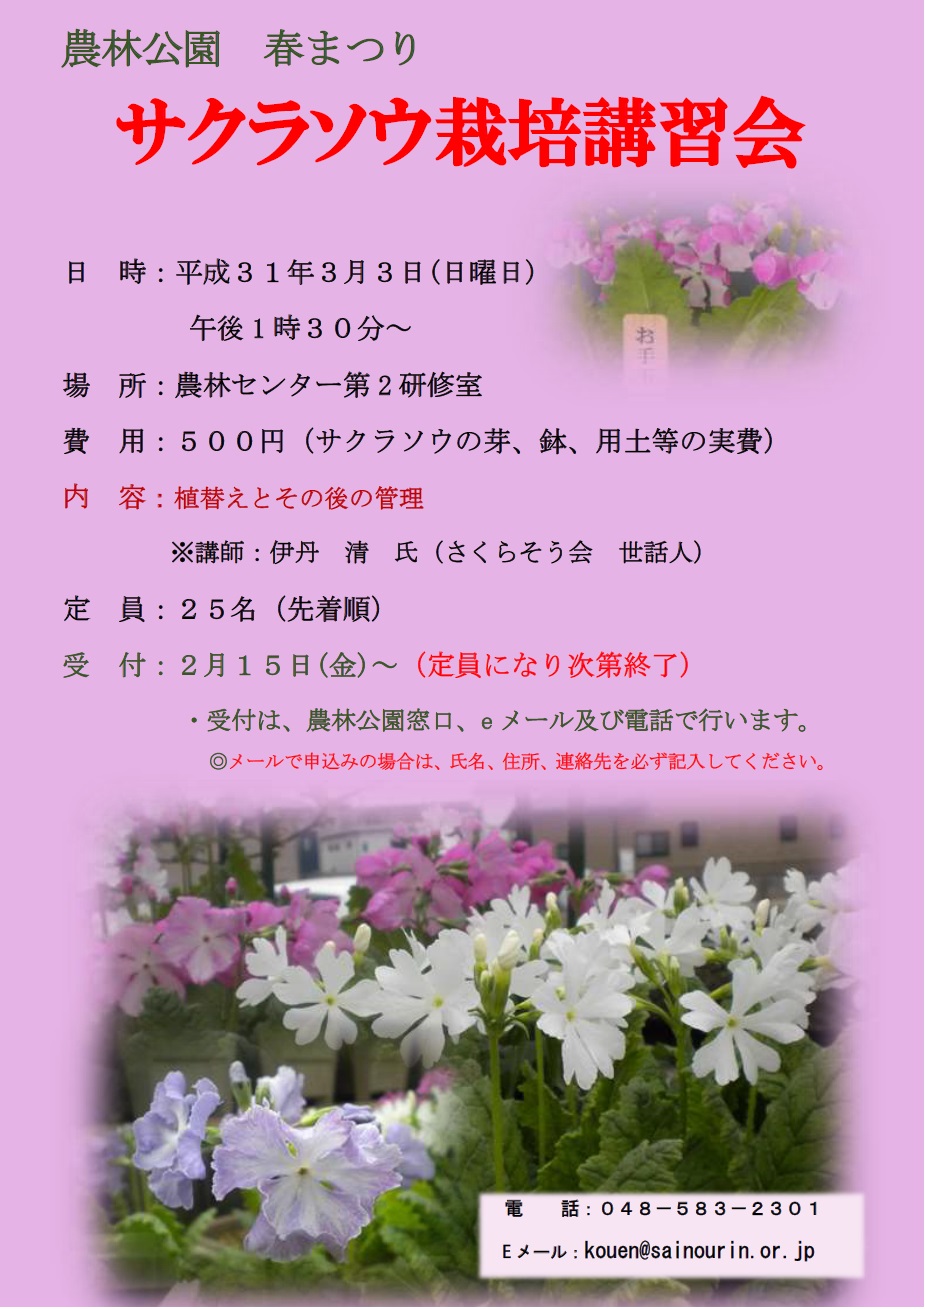 農林公園 サクラソウ栽培講習会 を開催します 埼玉県農林公園